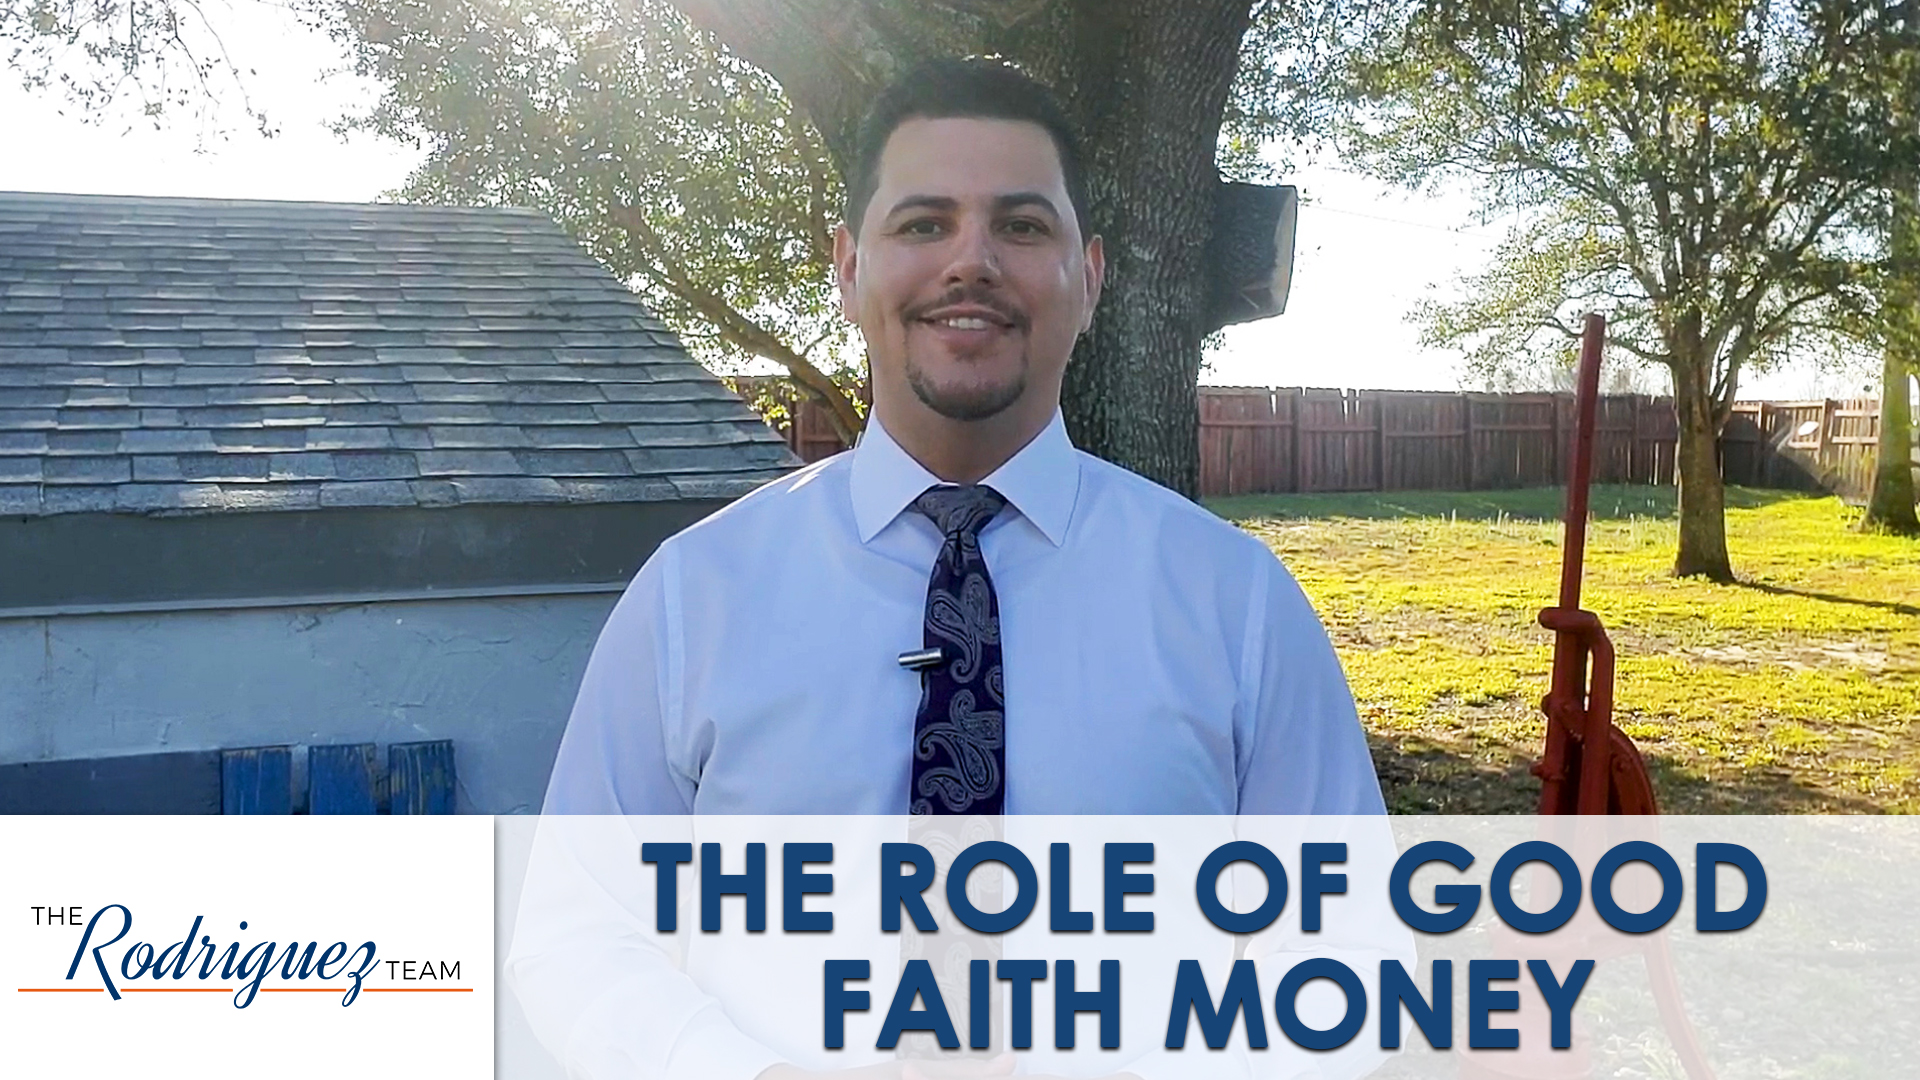 Why Is Good Faith Money Important?